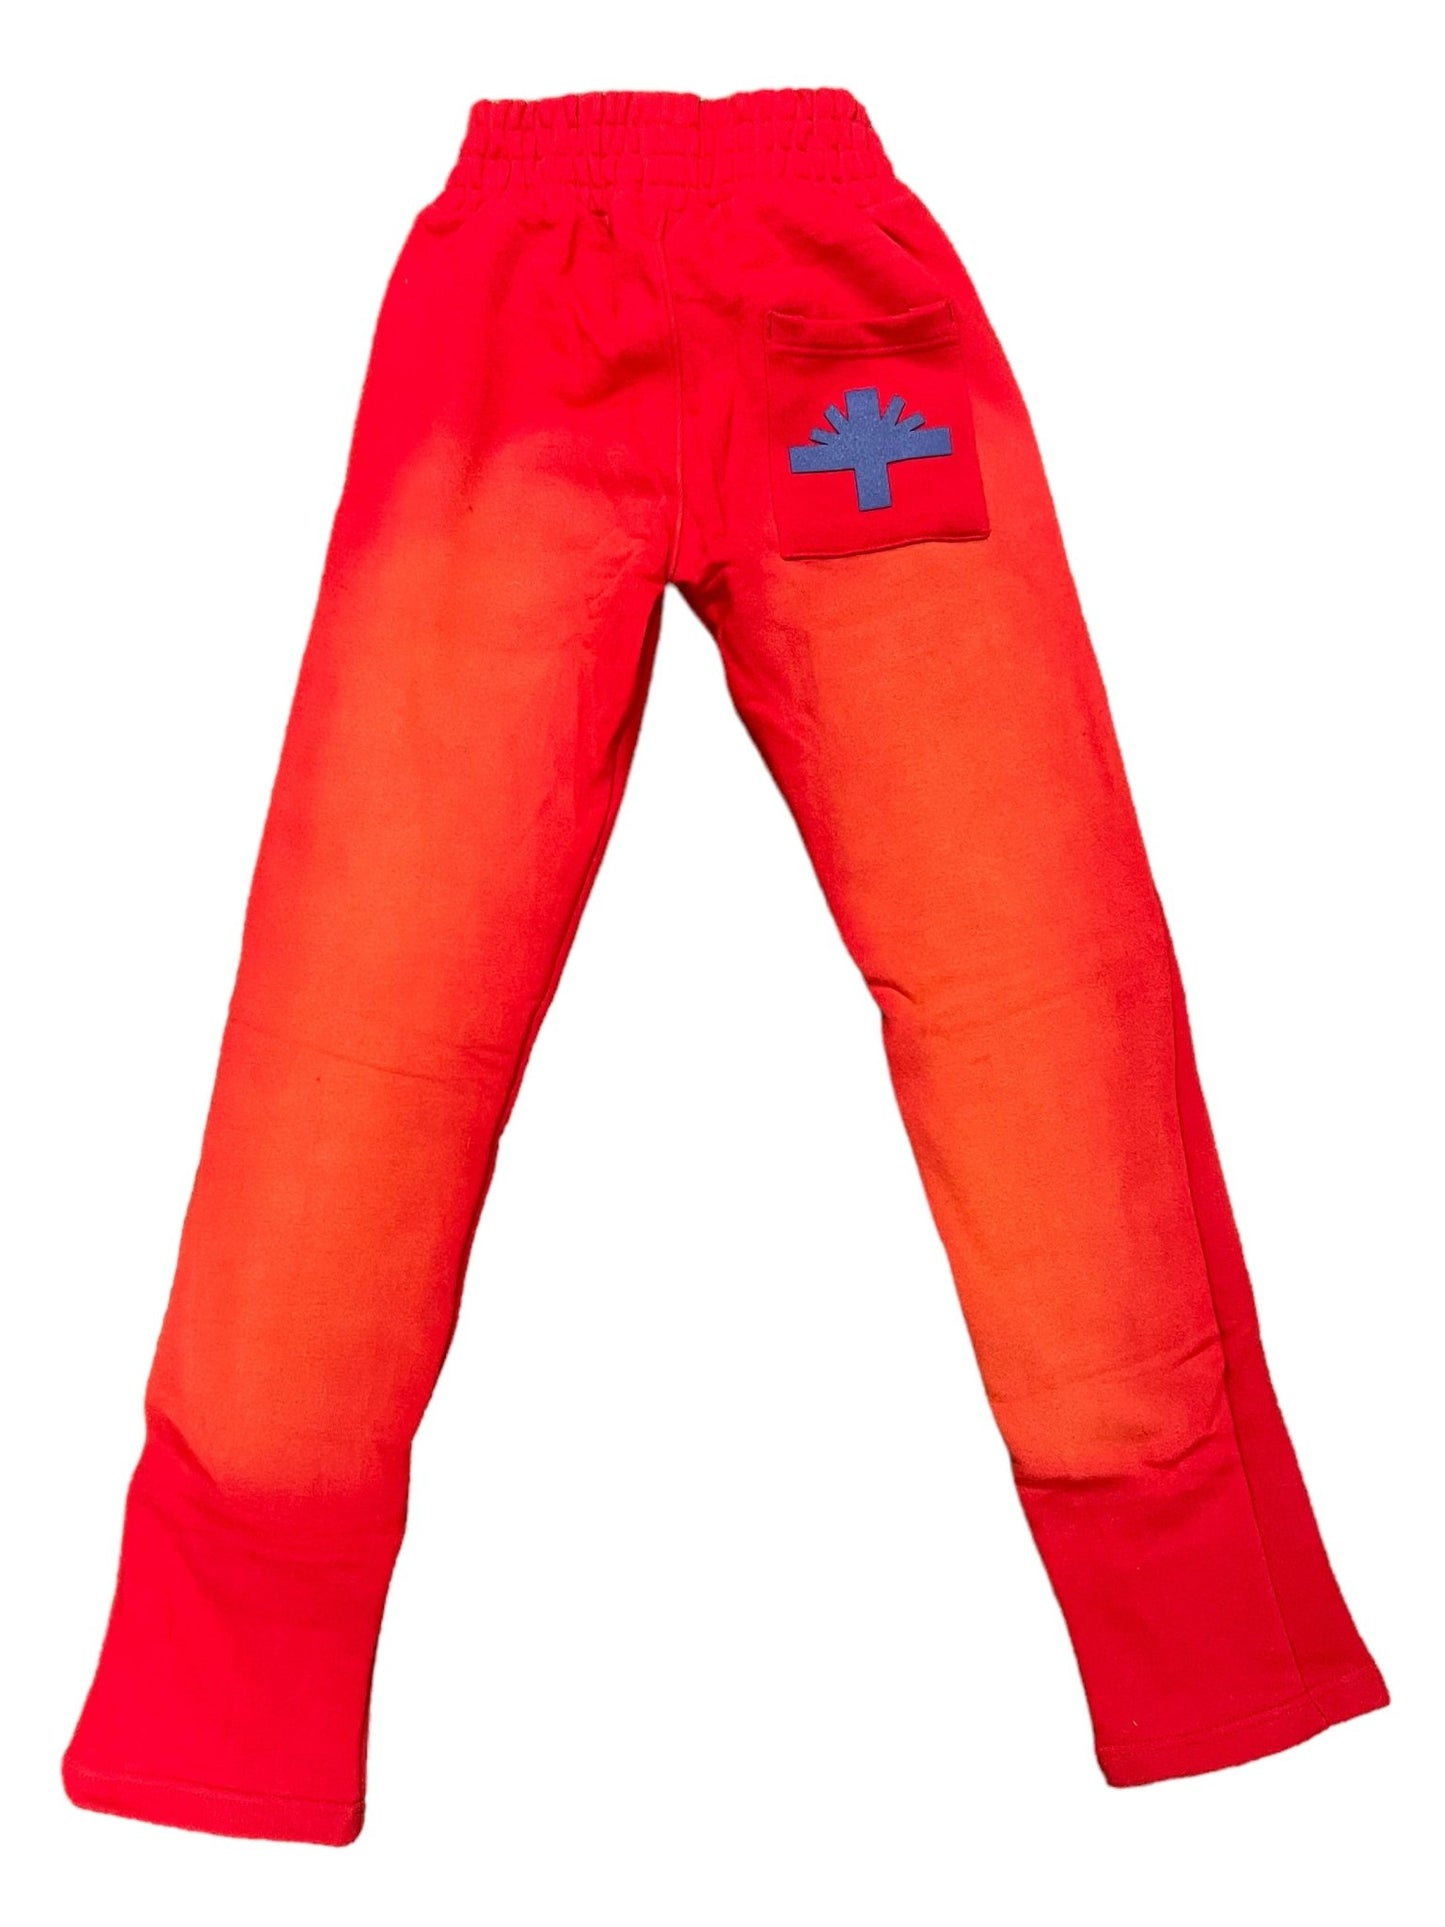 Vertabrae C-2 Sweat Pants Washed (Red & Blue) - Paroissesaintefoy Sneakers Sale Online